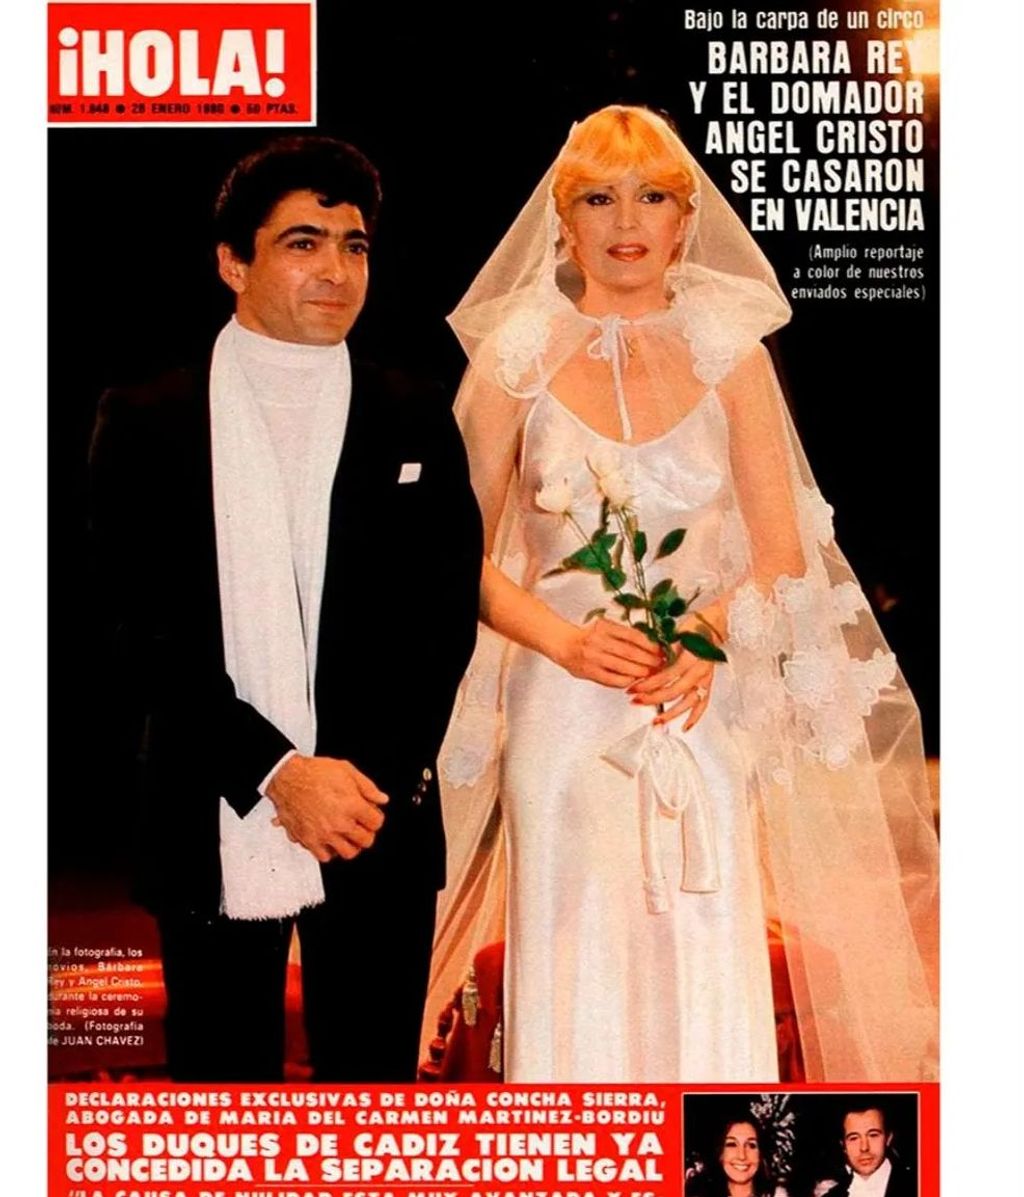 La boda de Bárbara Rey y Ángel Cristo en la portada de ¡Hola!